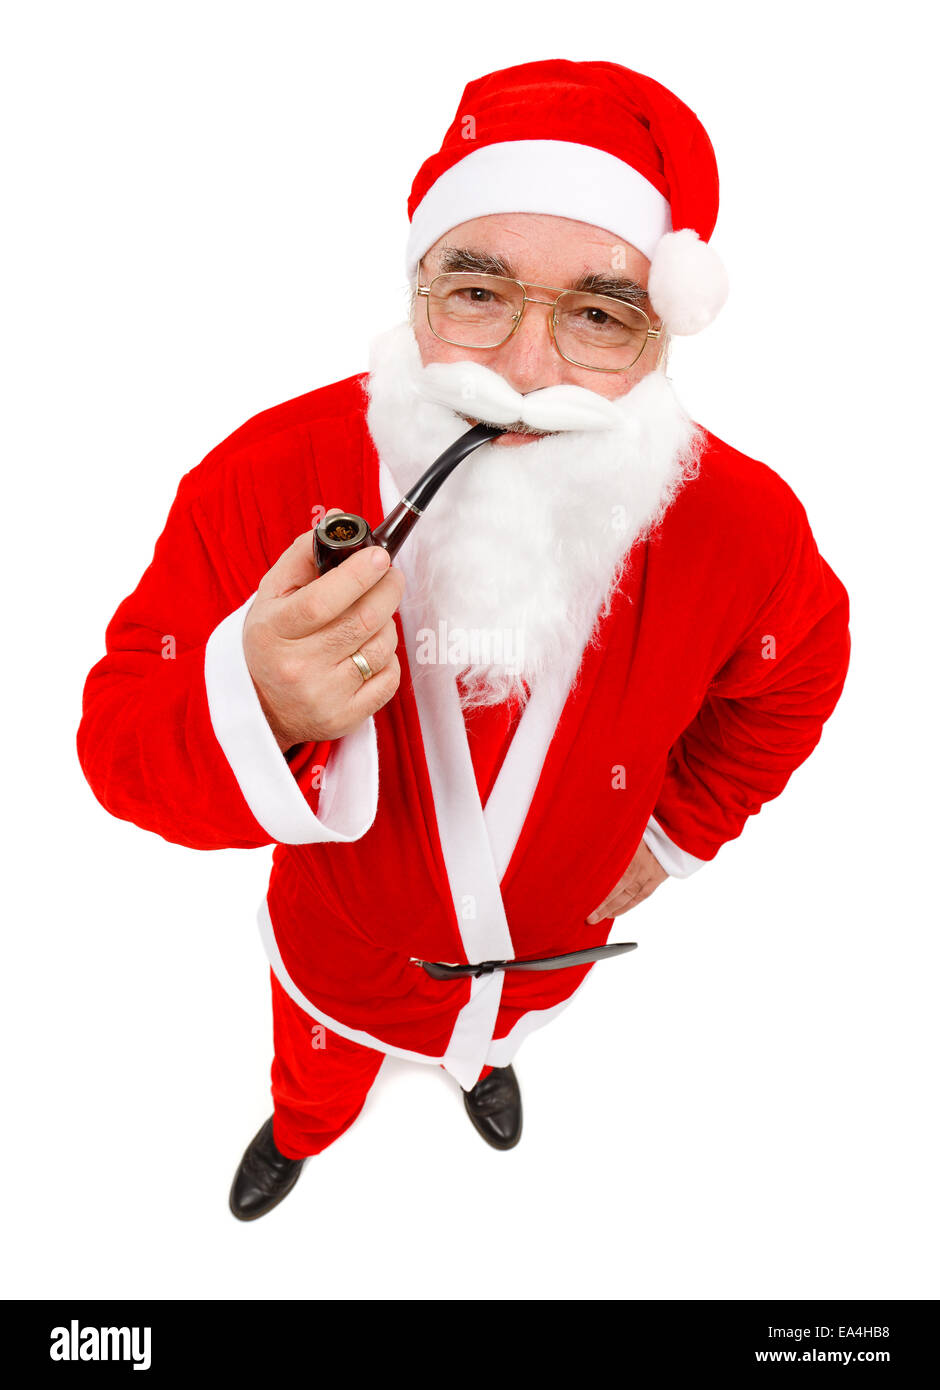 Senior man wearing Santa Claus uniform, holding pipe Stock Photo